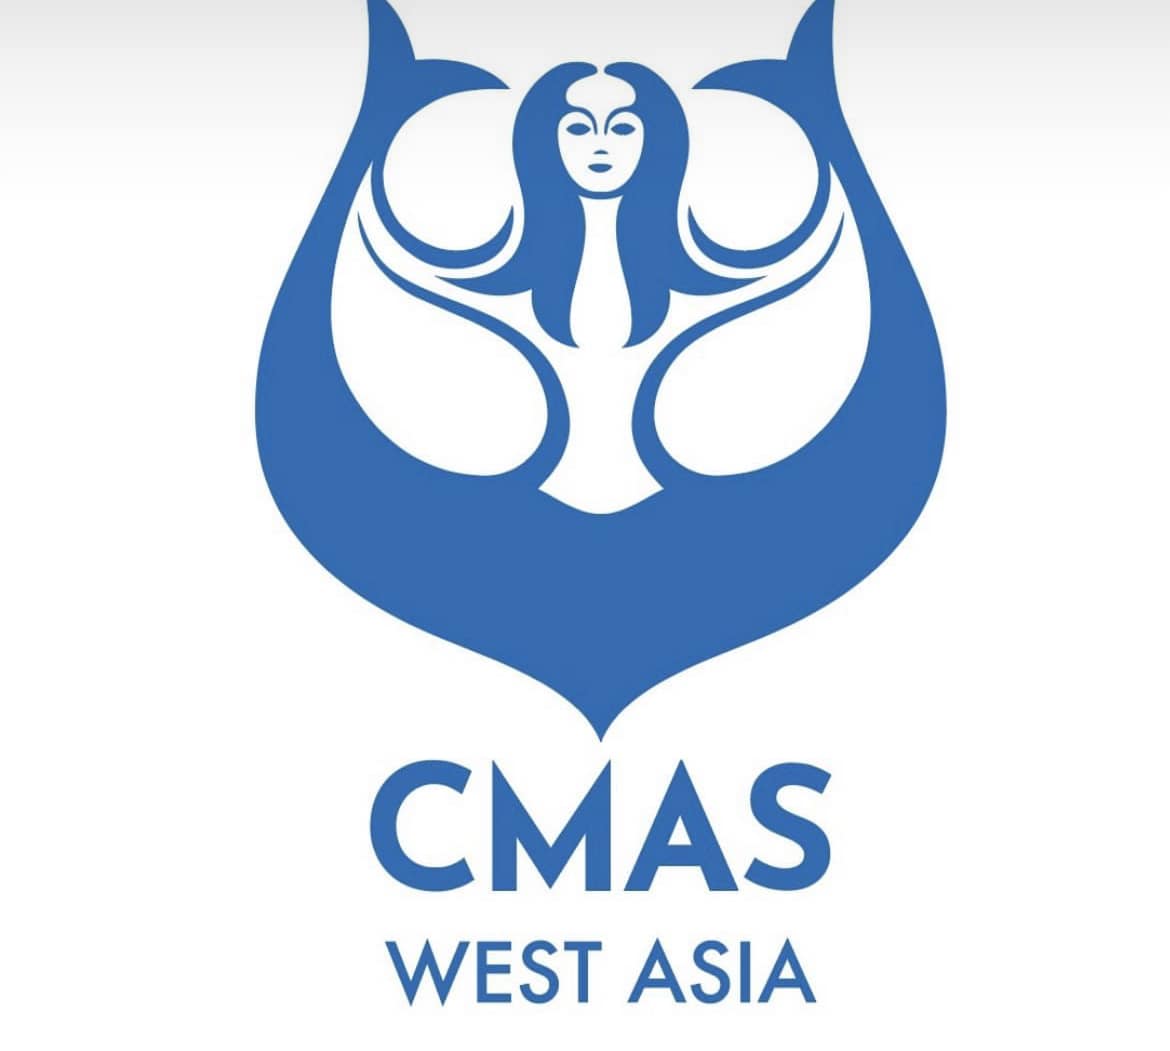 CMAS West Asia